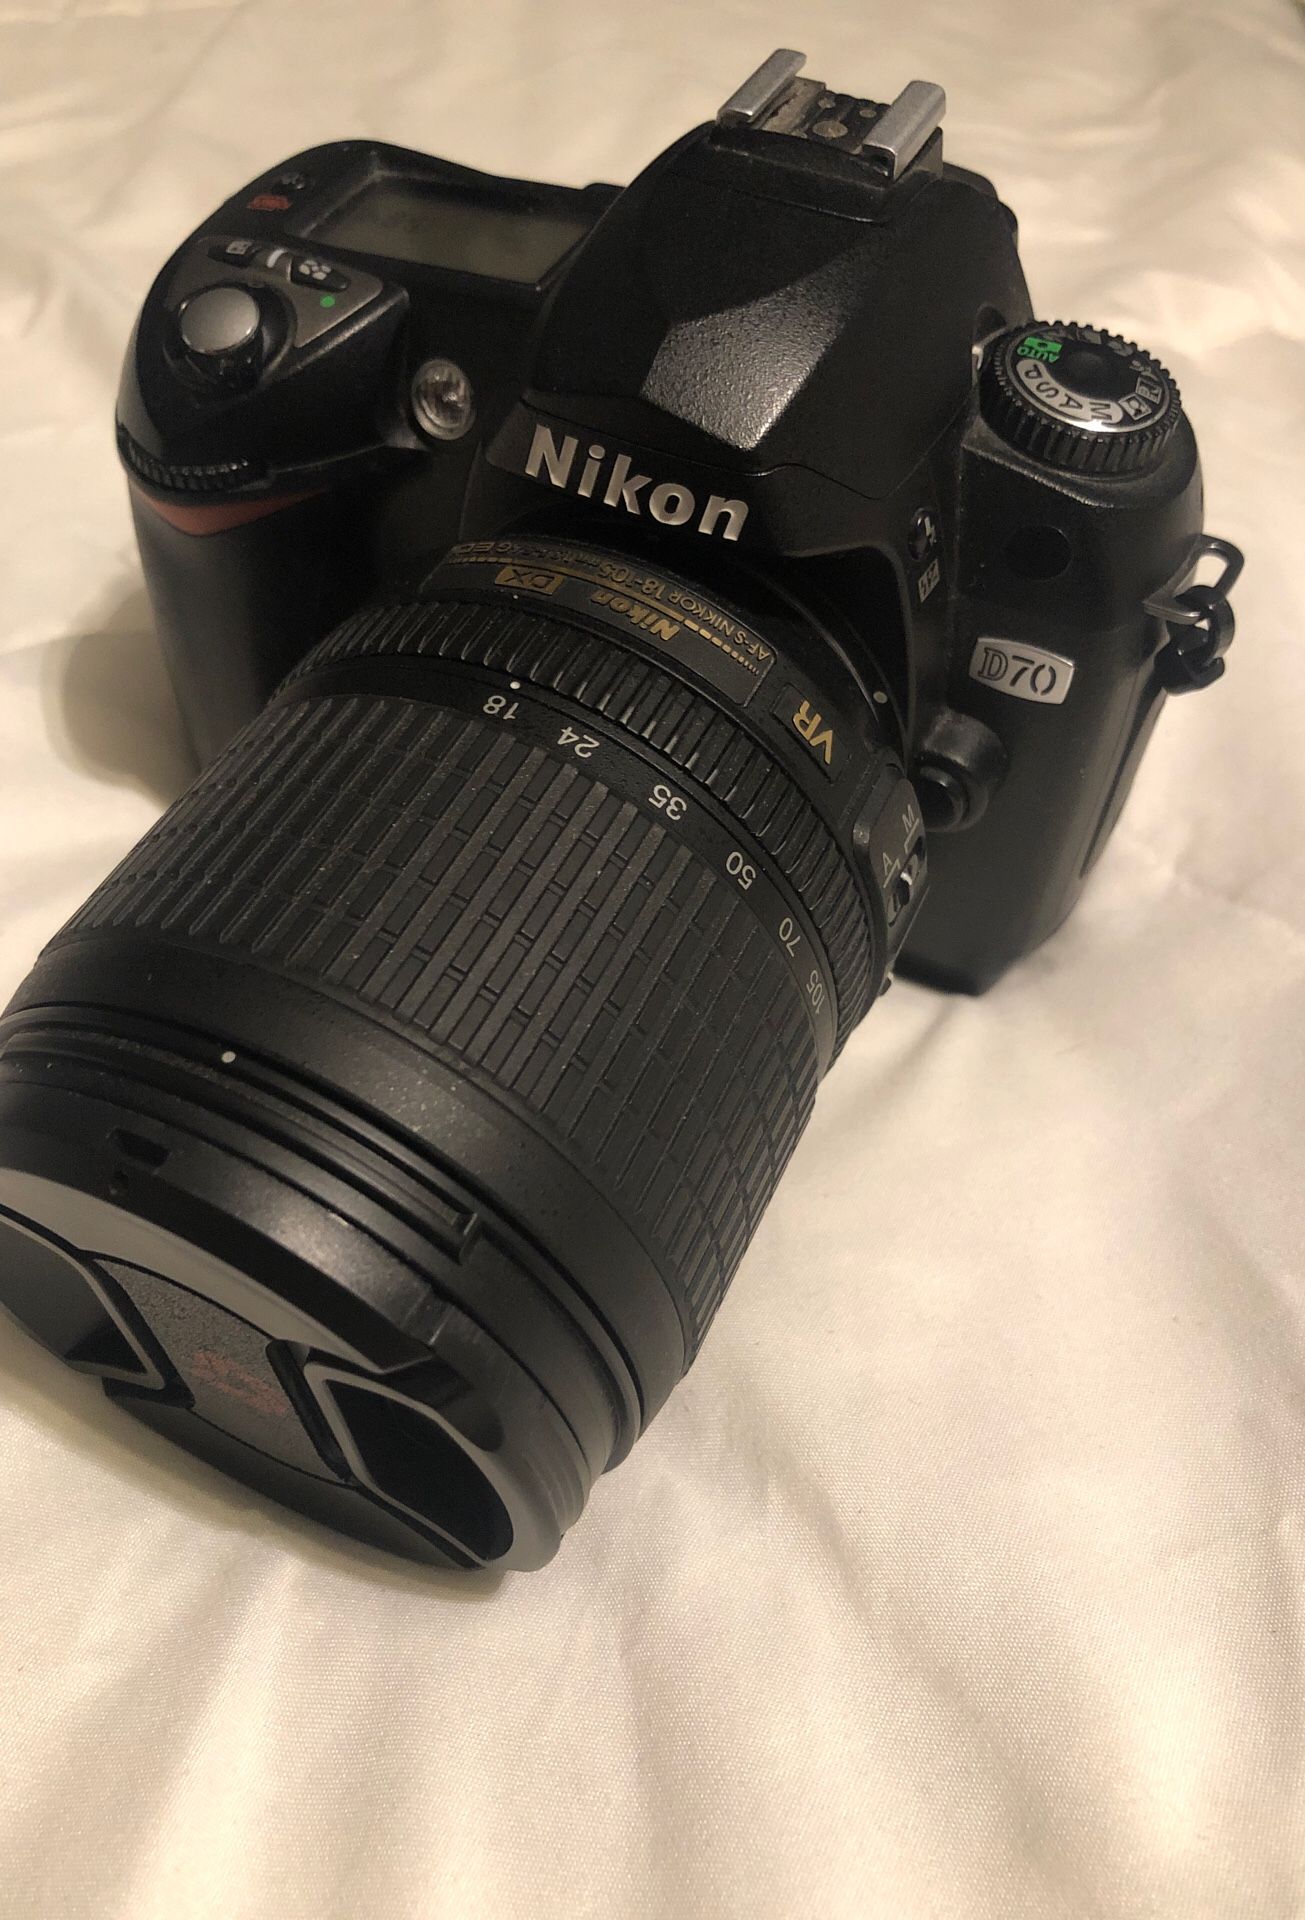 Nikon D70 with AF-S Nikkor 18-105mm 1:3.5-5.6G ED